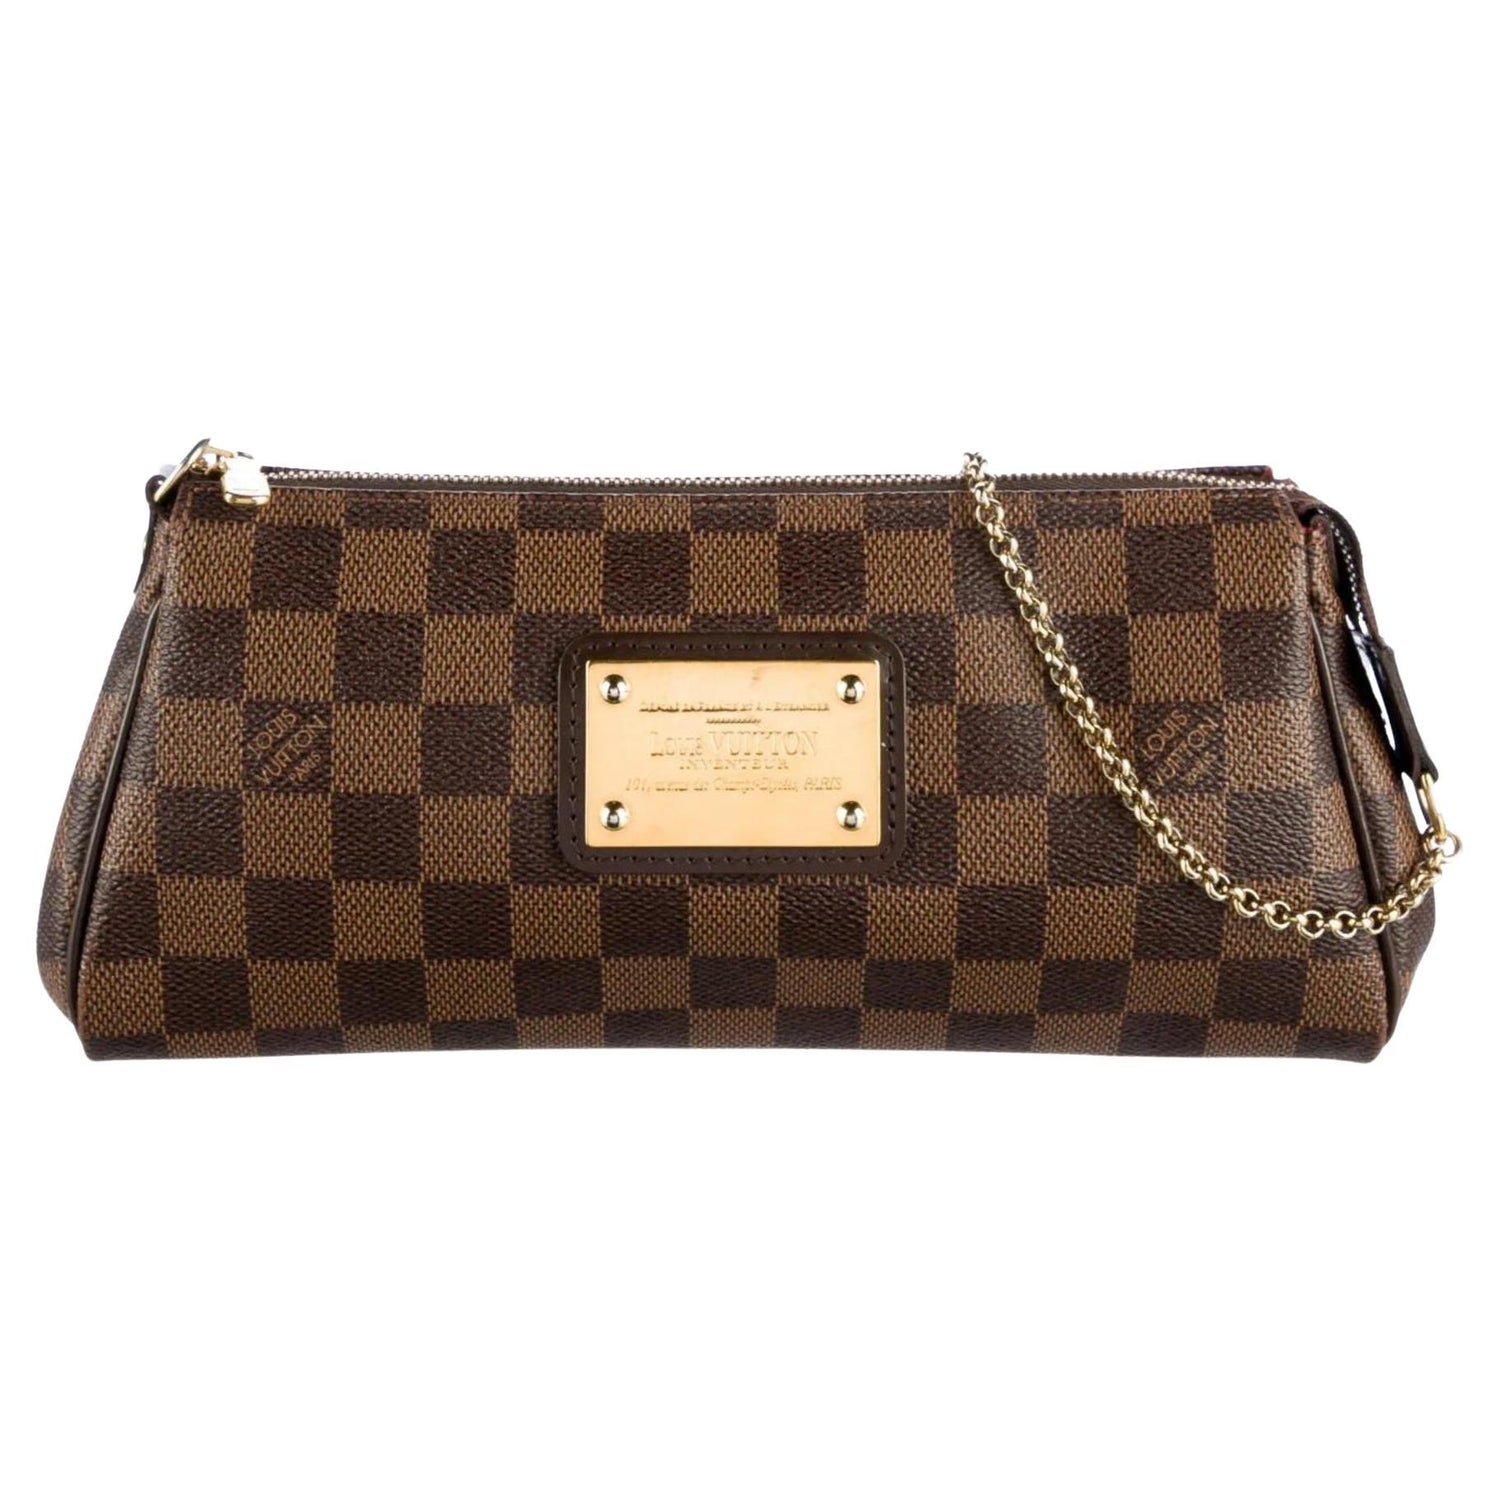 Louis Vuitton Autres Collection Handbag 188473